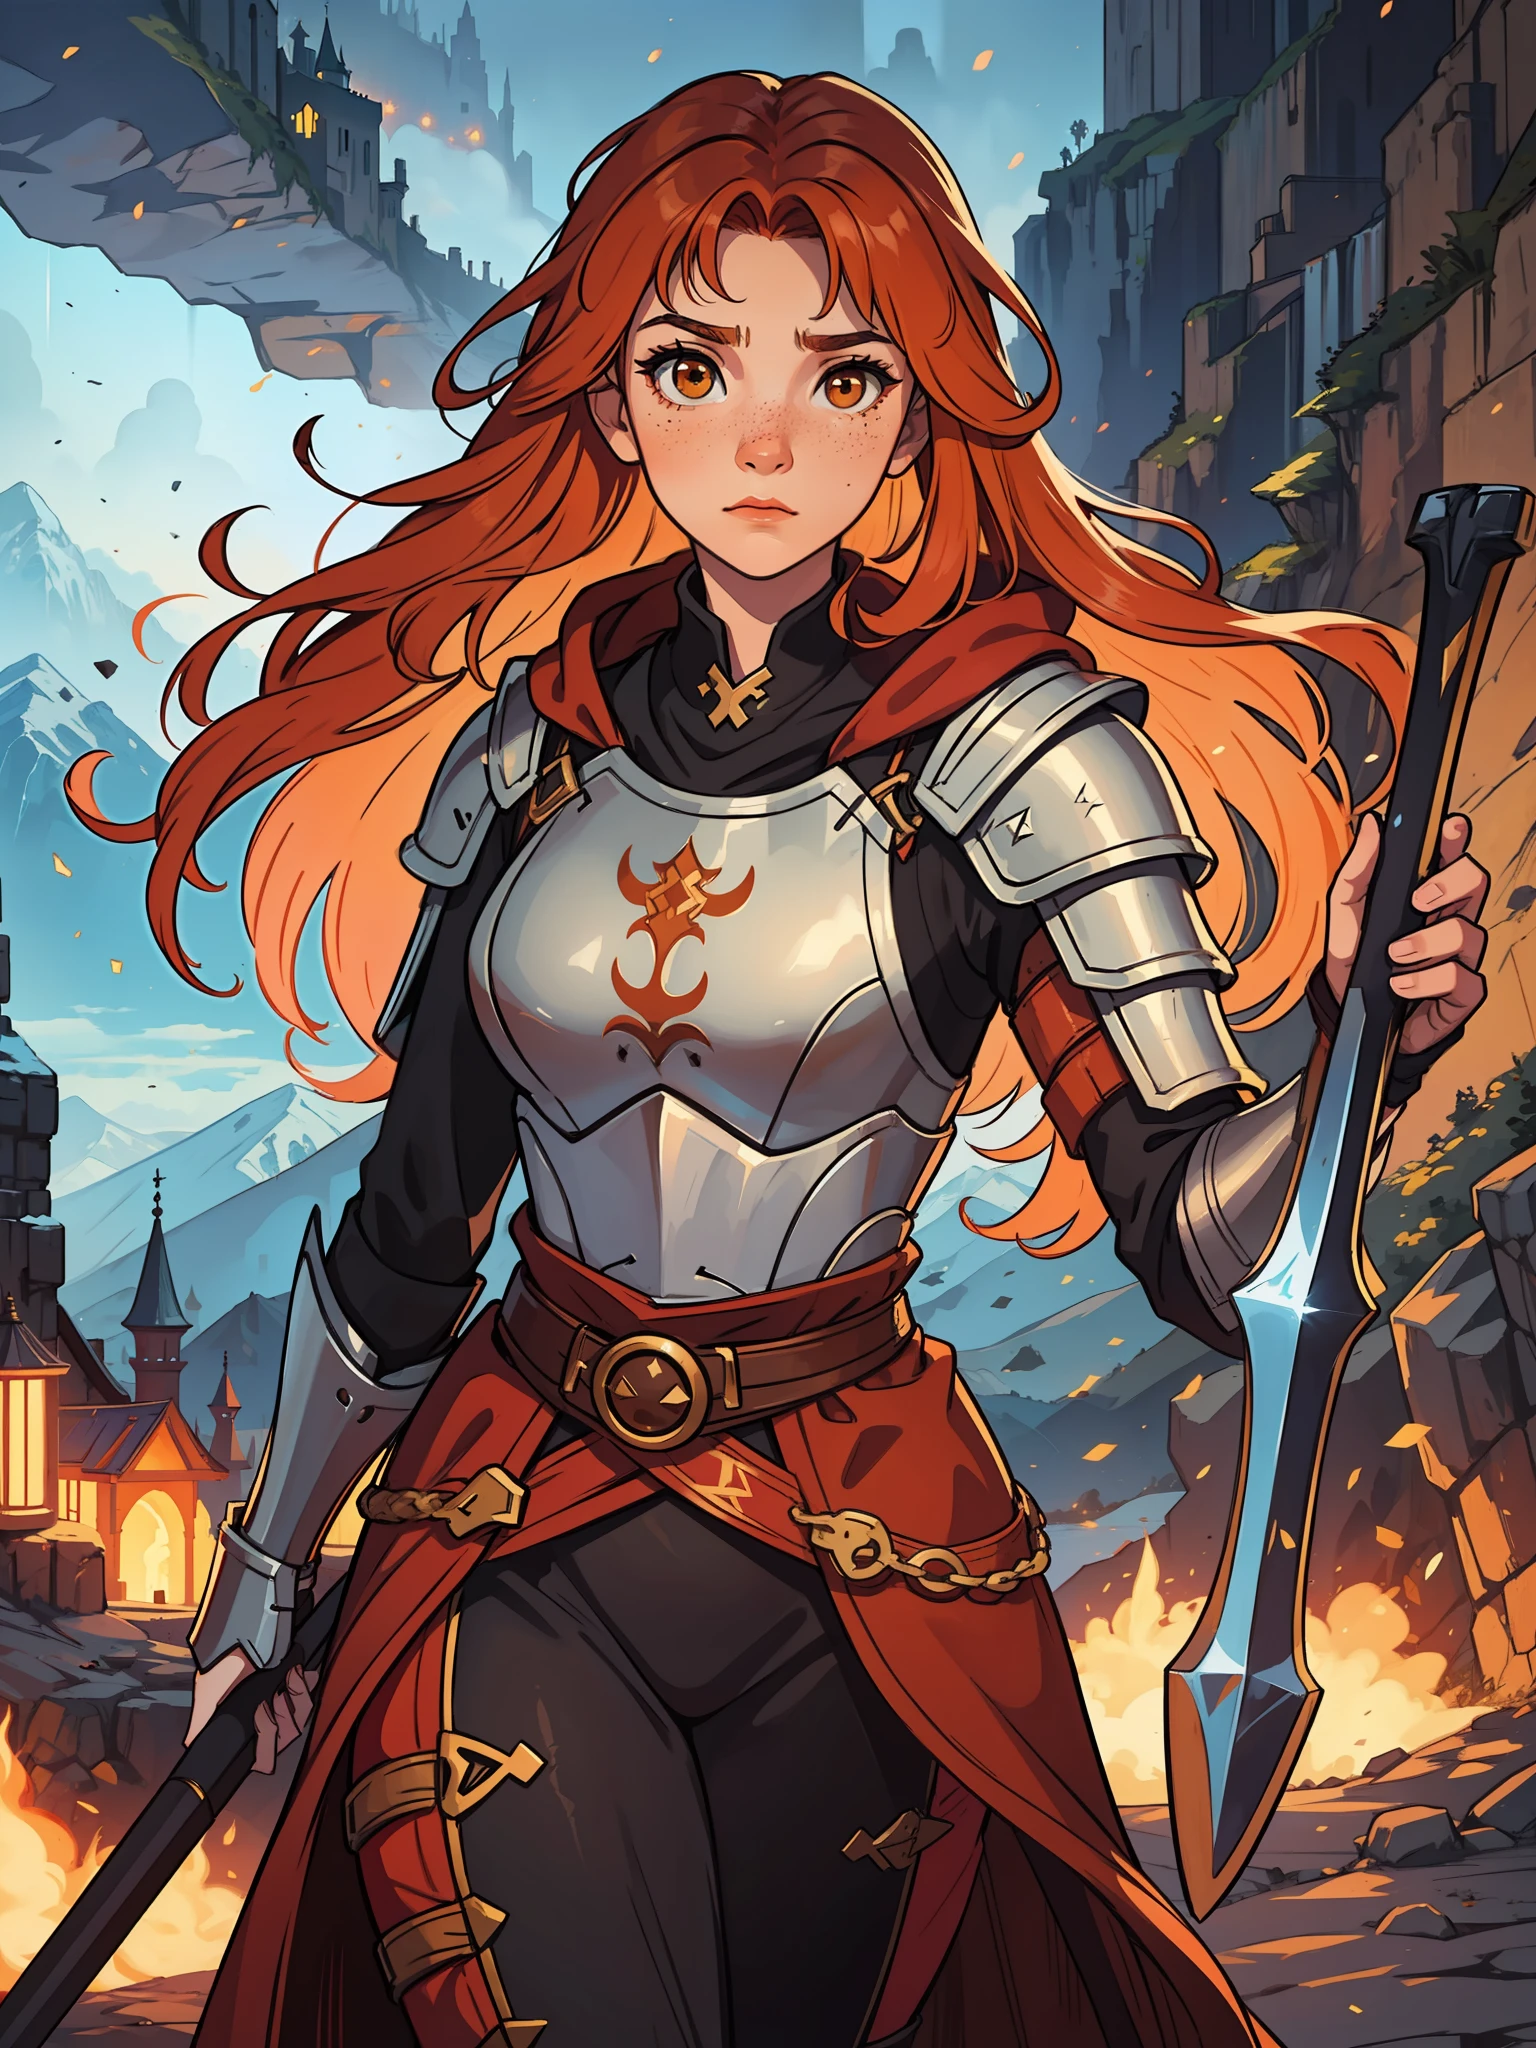 一位年轻的红发少女，有着橙色的头发和棕色的眼睛, 她长着雀斑，看起来很勇敢。, 她是一名身穿强大魔法盔甲的中世纪角色扮演游戏战士, 充满魔法和神奇灯光的背景, 山中堡垒的轮廓灯和电影灯光.